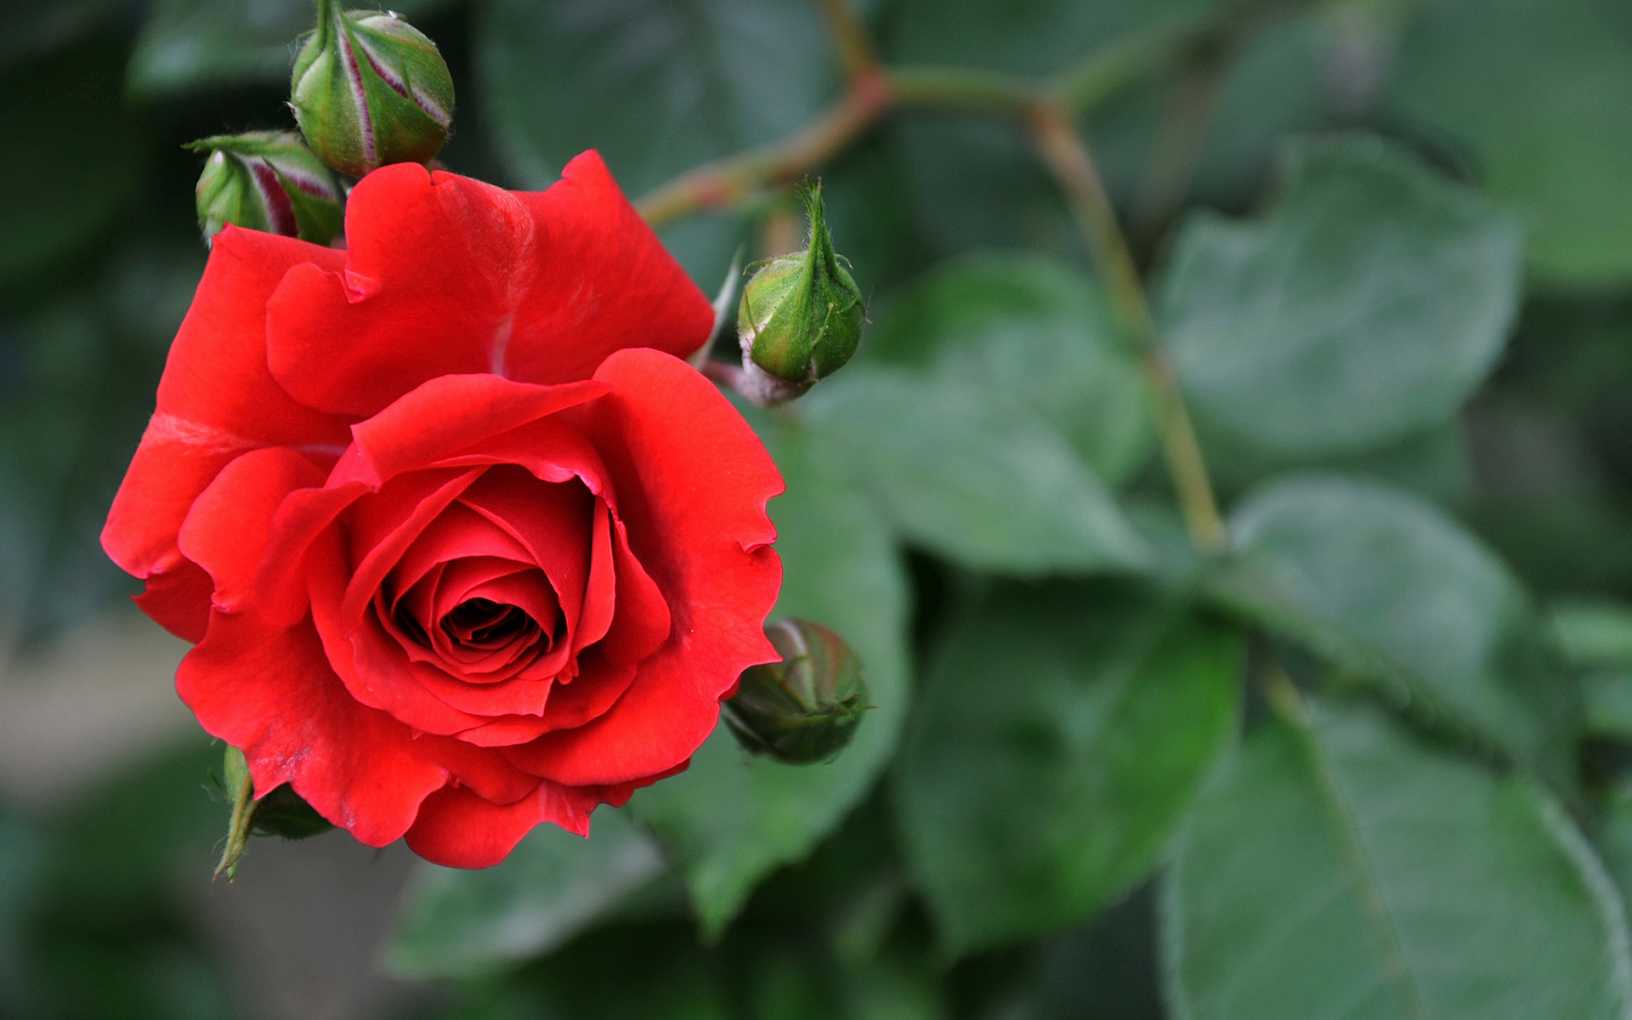 莎士比亚十四行诗：赏玫瑰纯真之美